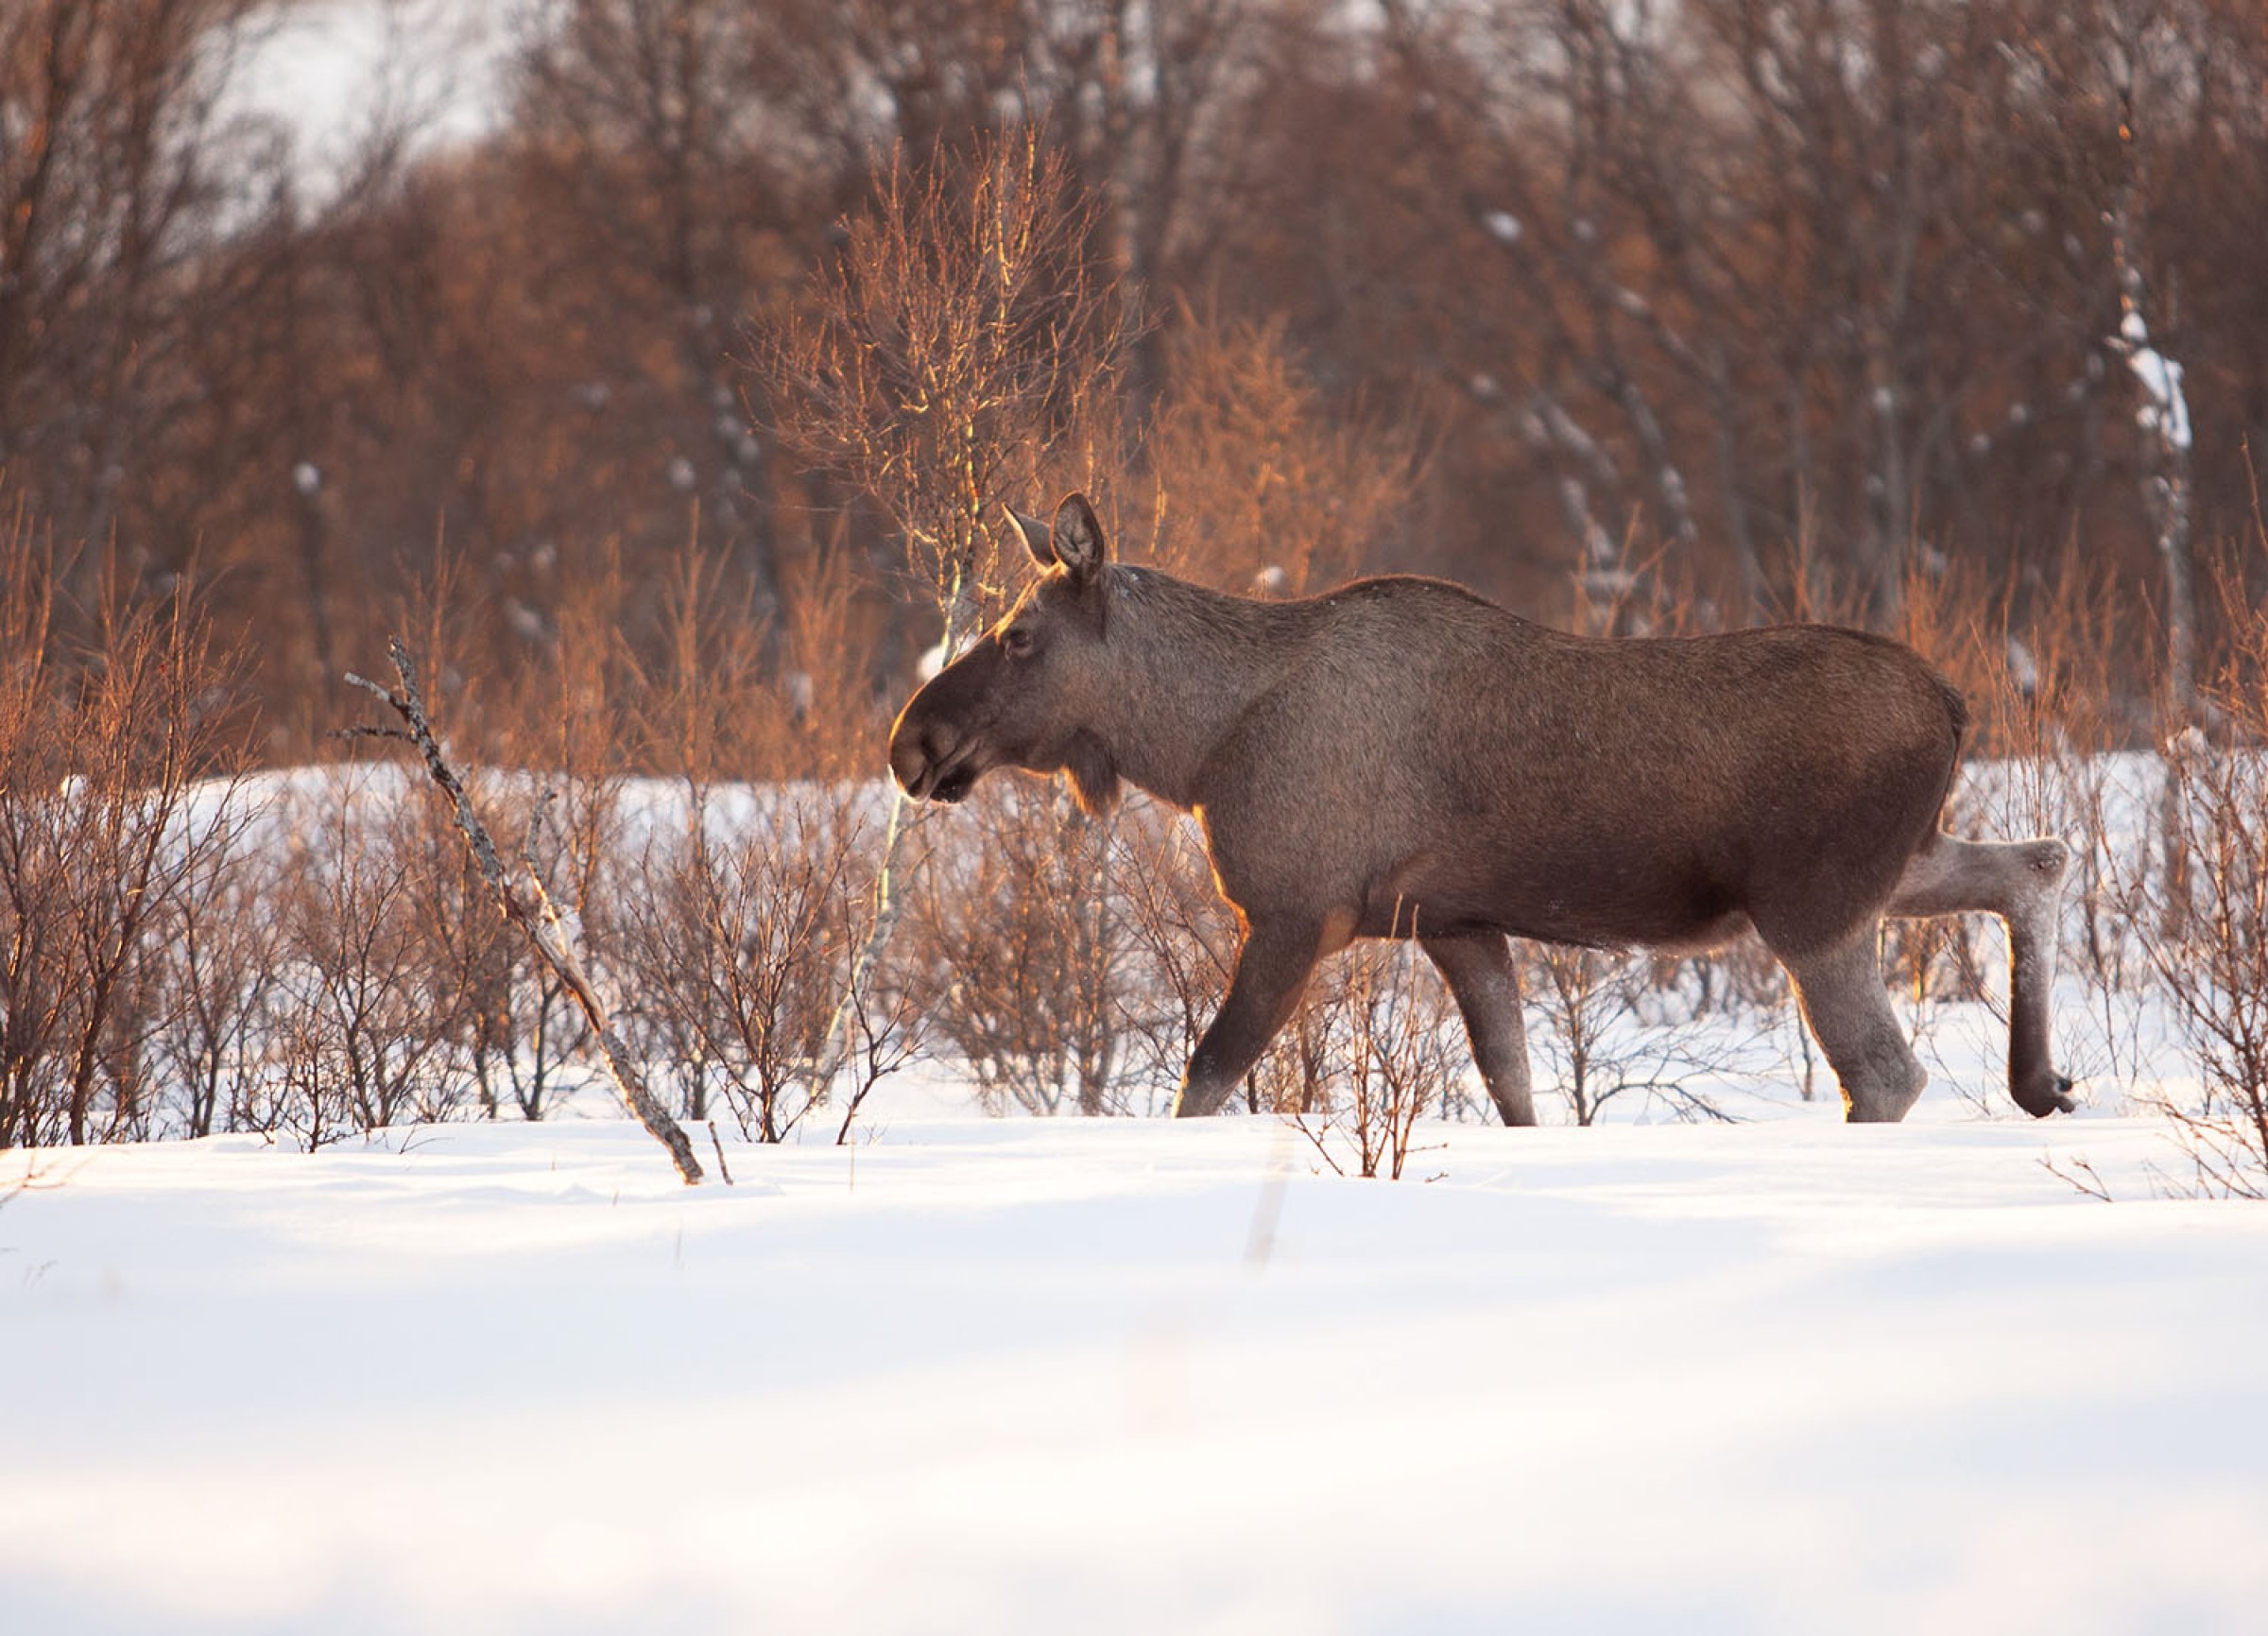 Første kjente tilfelle av ekinokokker hos elg er påvist i Norge. Illustrasjonsfoto: Shutterstock